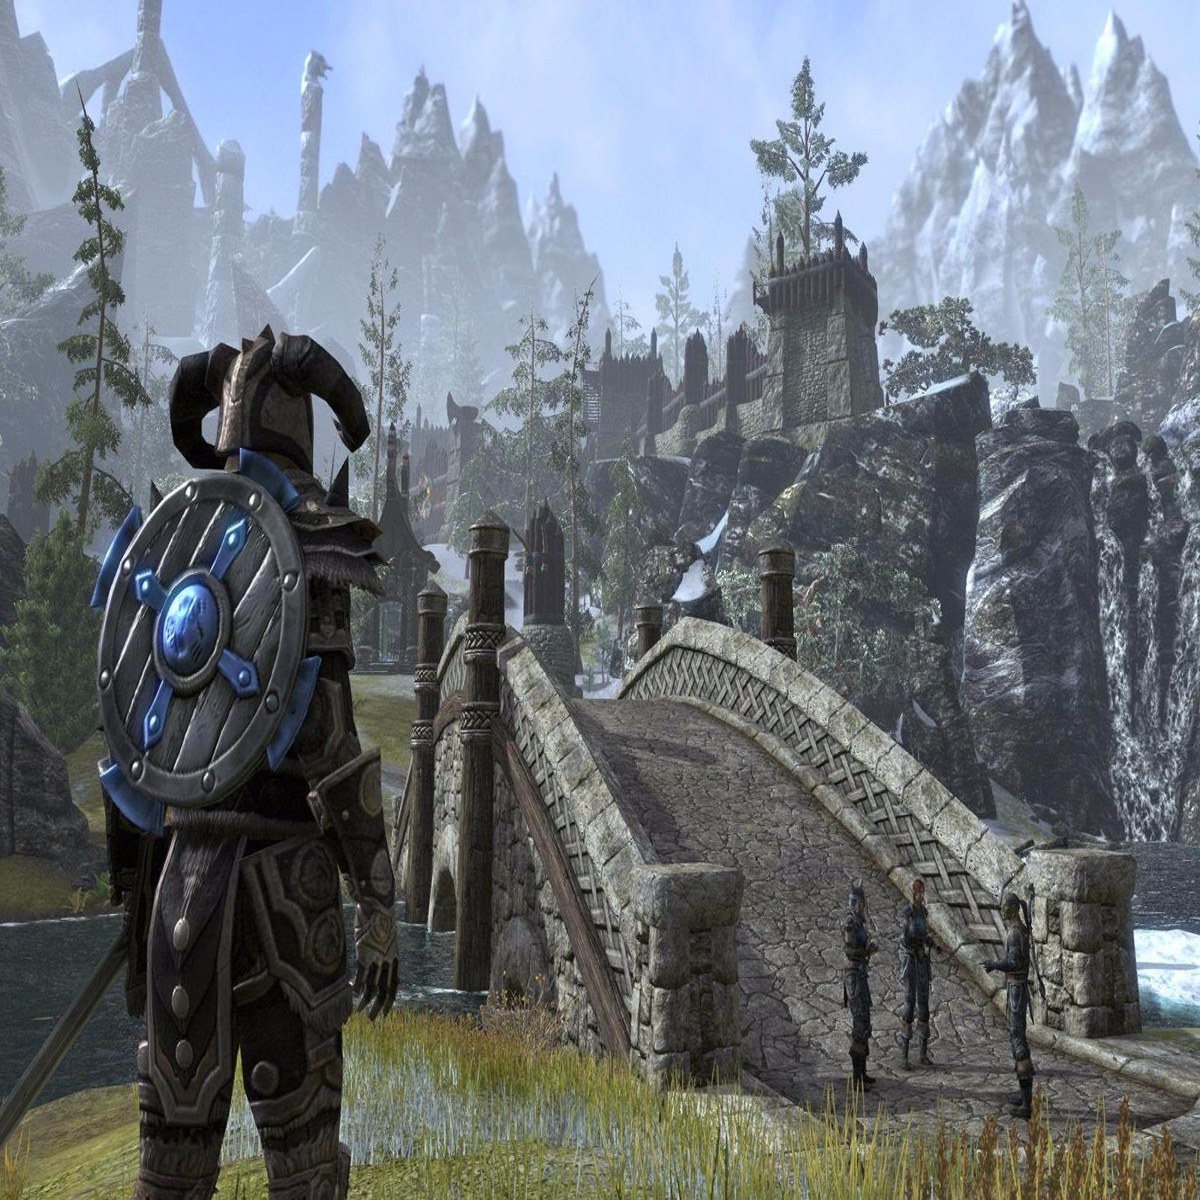 The Elder Scrolls Online: Shadow over Morrowind creative director